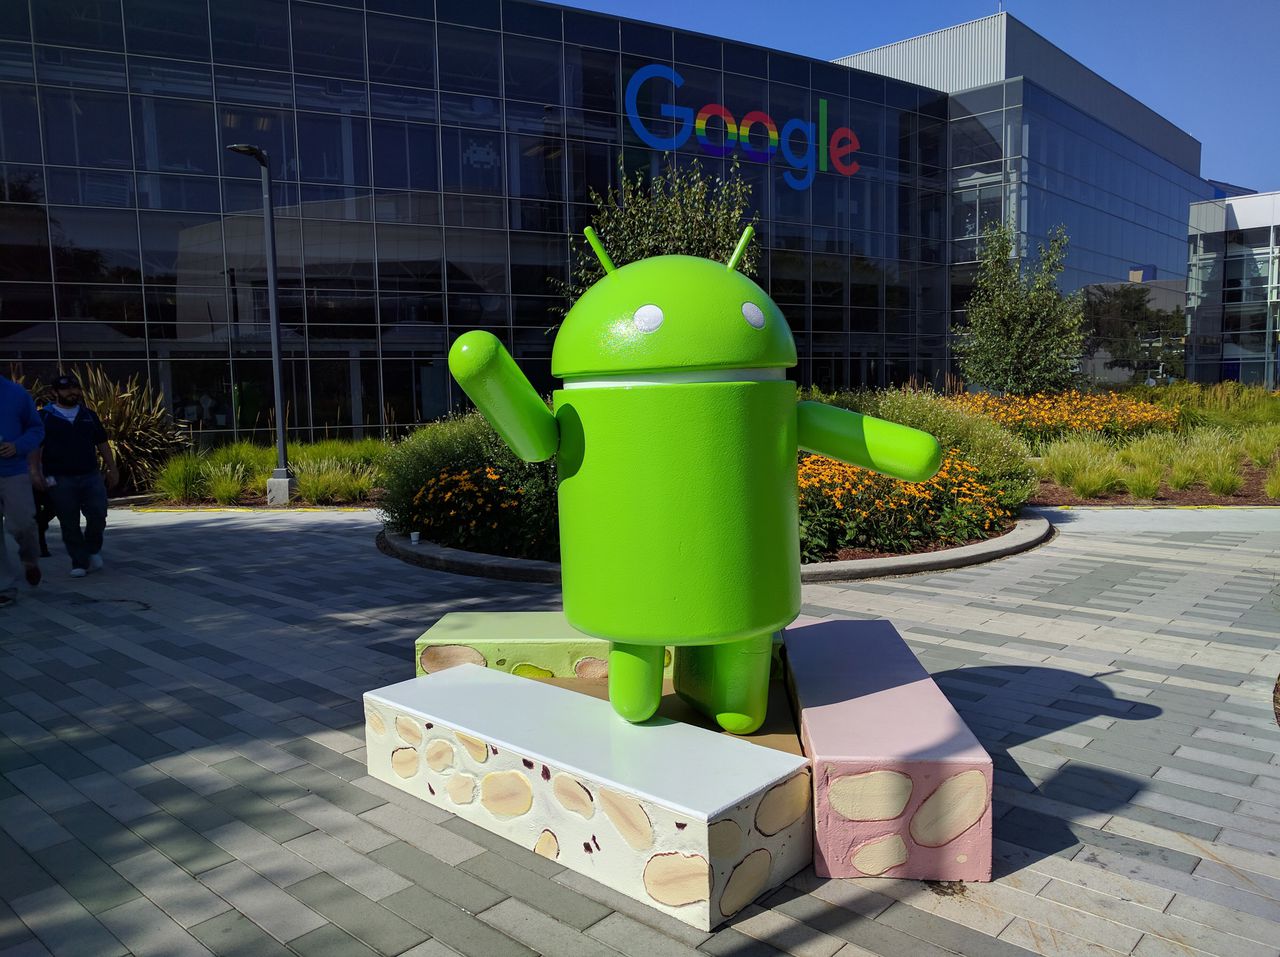 Het symbool van Android, een besturingssysteem van Google, voor de Google campus in Californië.